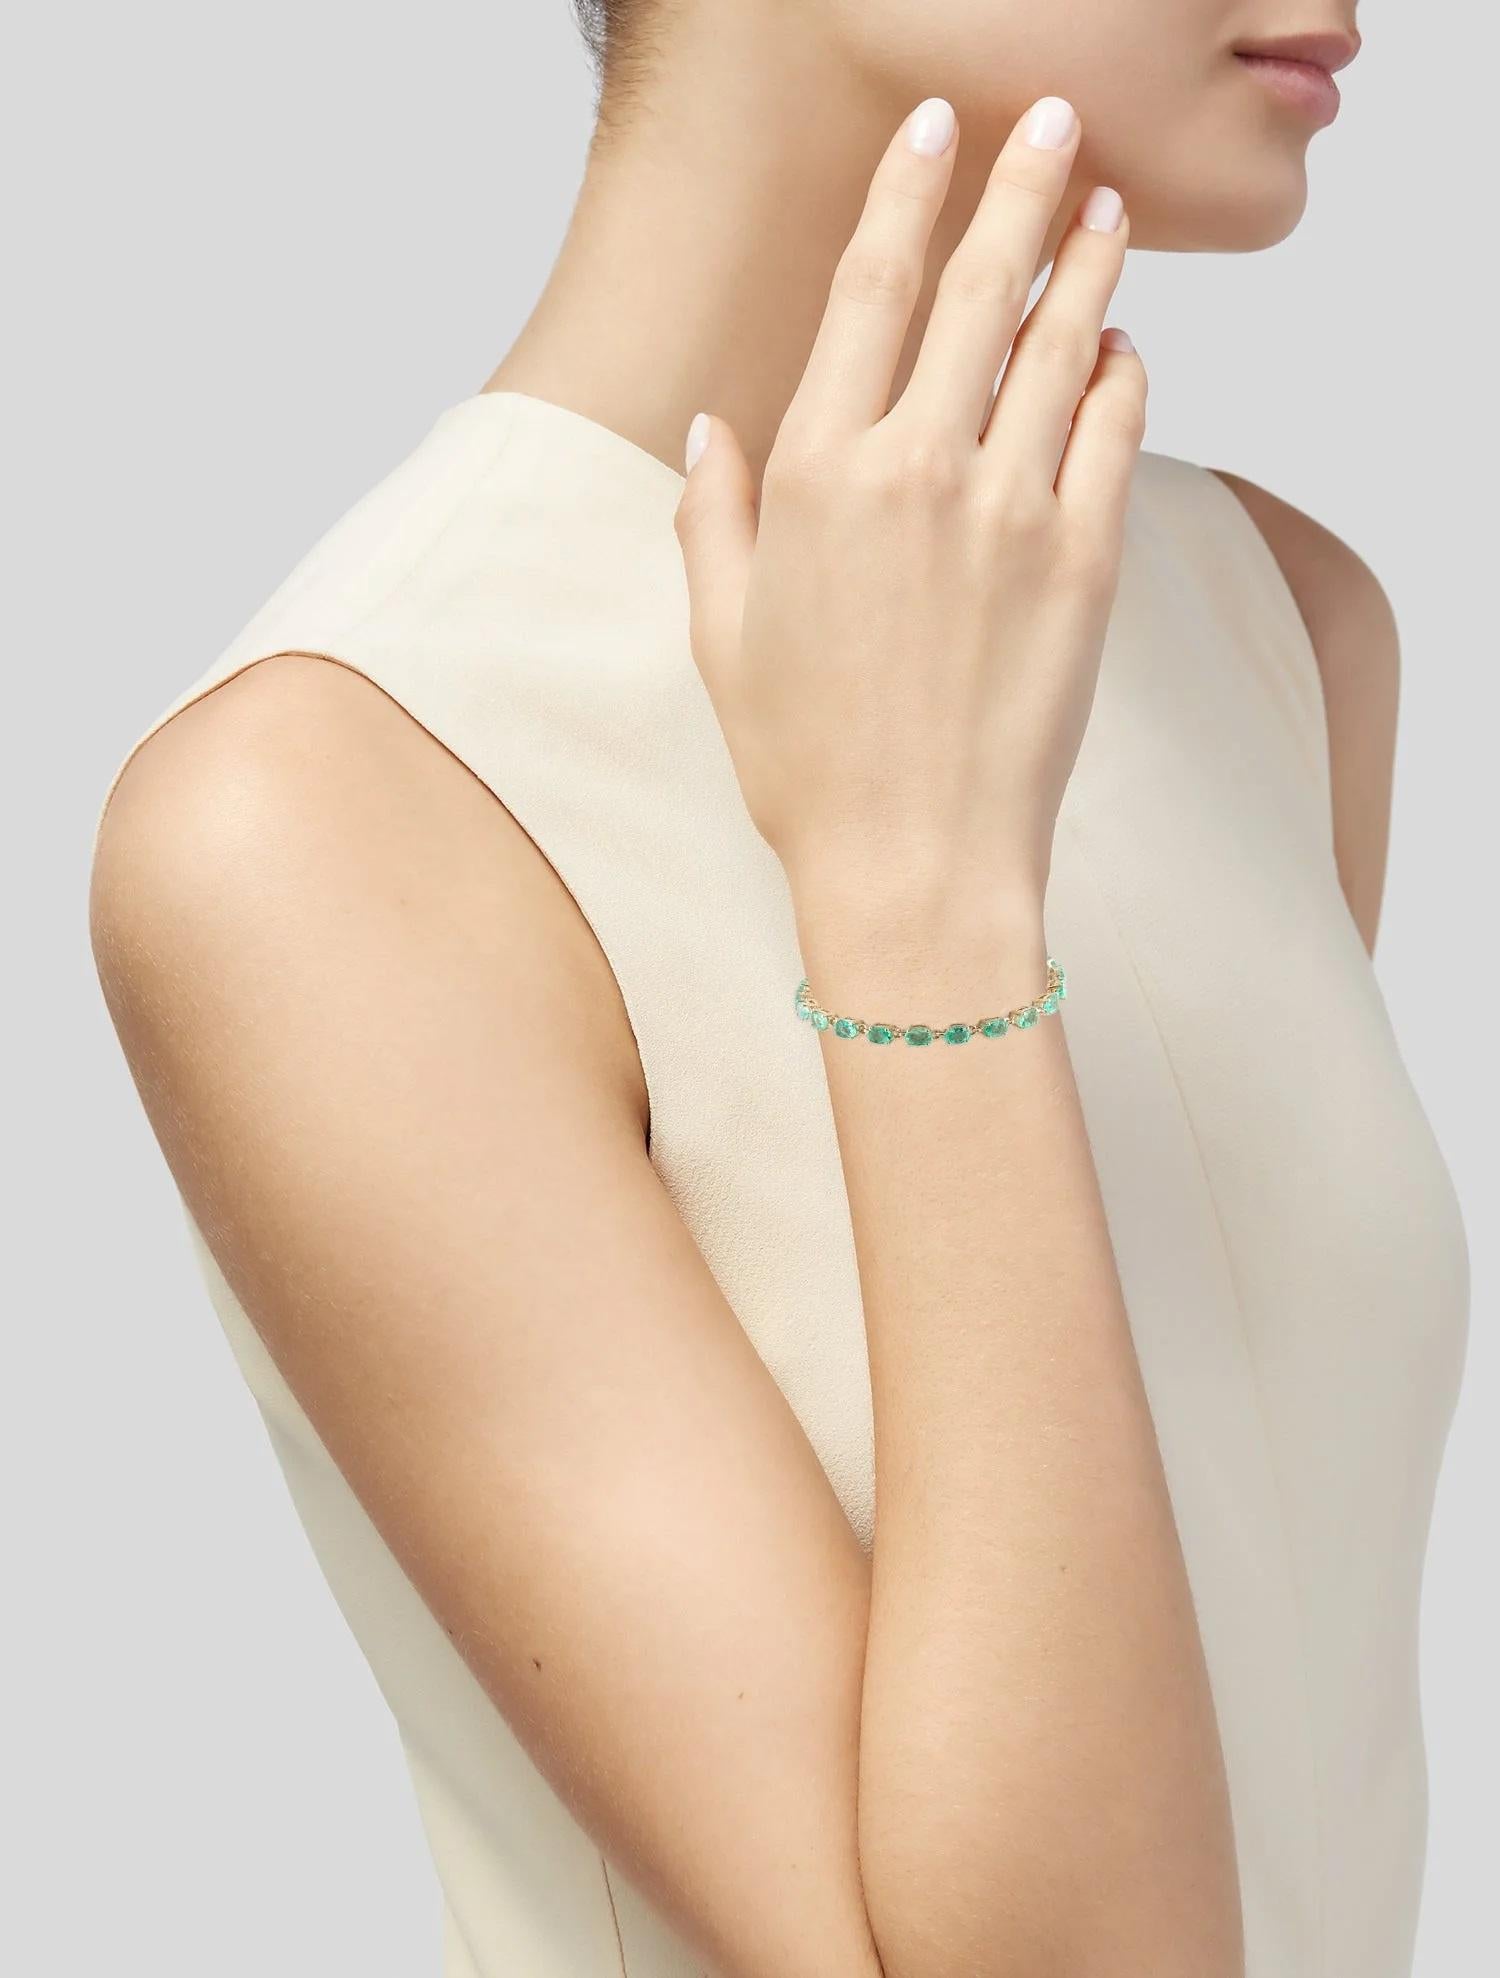 Veredeln Sie Ihr Handgelenk mit diesem exquisiten 14K Smaragd-Gliederarmband, das mit 9,62 Karat facettierten ovalen Smaragden verziert ist. Das aus glänzendem Gelbgold gefertigte Armband strahlt Eleganz und Raffinesse aus und ist damit das perfekte